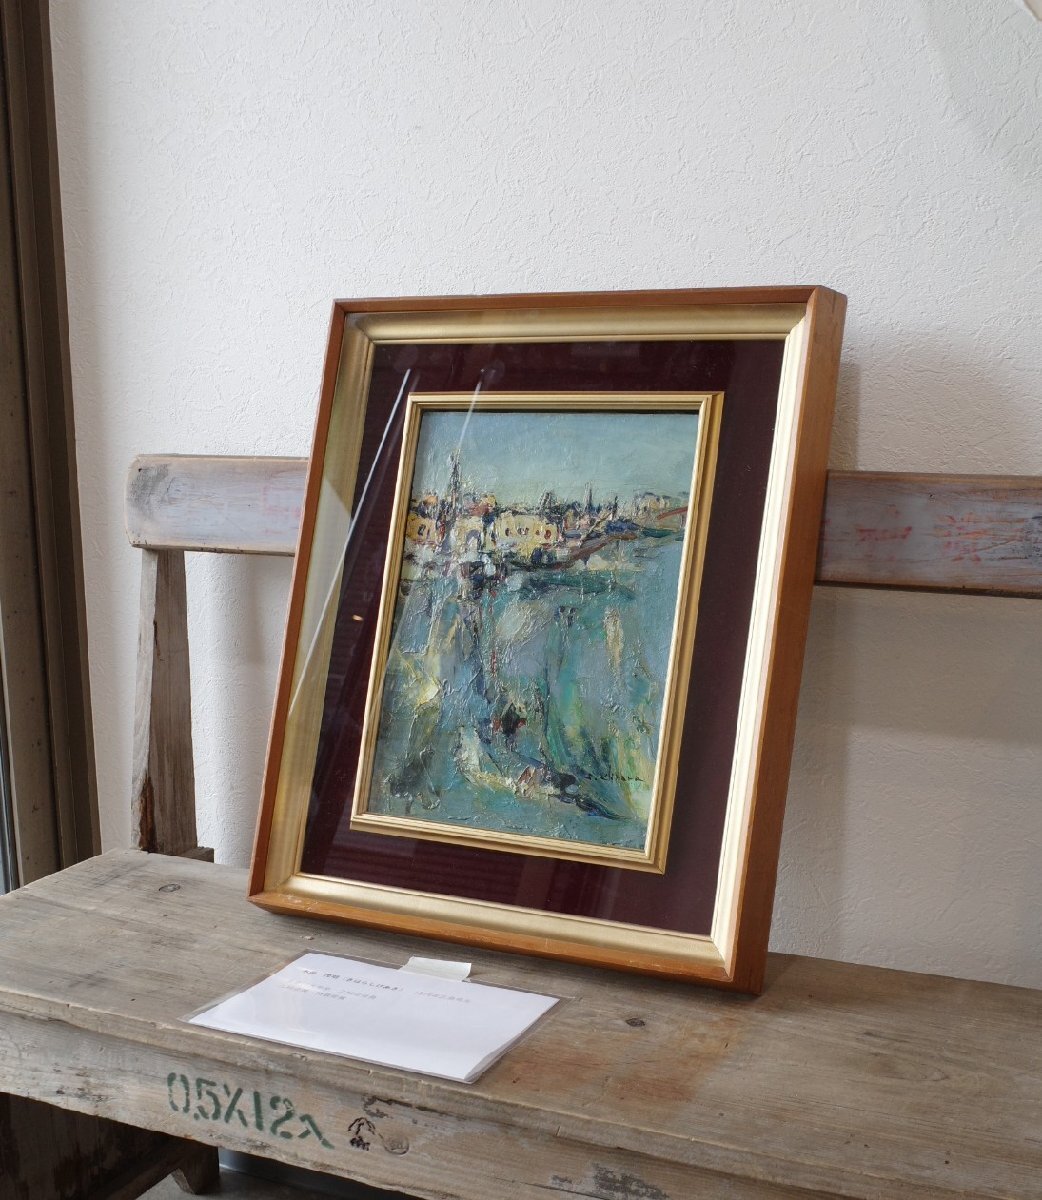 शिगेकी किहारा तेल चित्रकला लकड़ी का फ्रेम F4 यूरोपीय समुद्र तटीय शहर परिदृश्य पेंटिंग विशेष रूप से निकेतन प्रदर्शनी के लिए चयनित हिरोशिमा में जन्मे कला प्राचीन वस्तुएँ gplus हिरोशिमा 2404i, चित्रकारी, तैल चित्र, प्रकृति, परिदृश्य चित्रकला